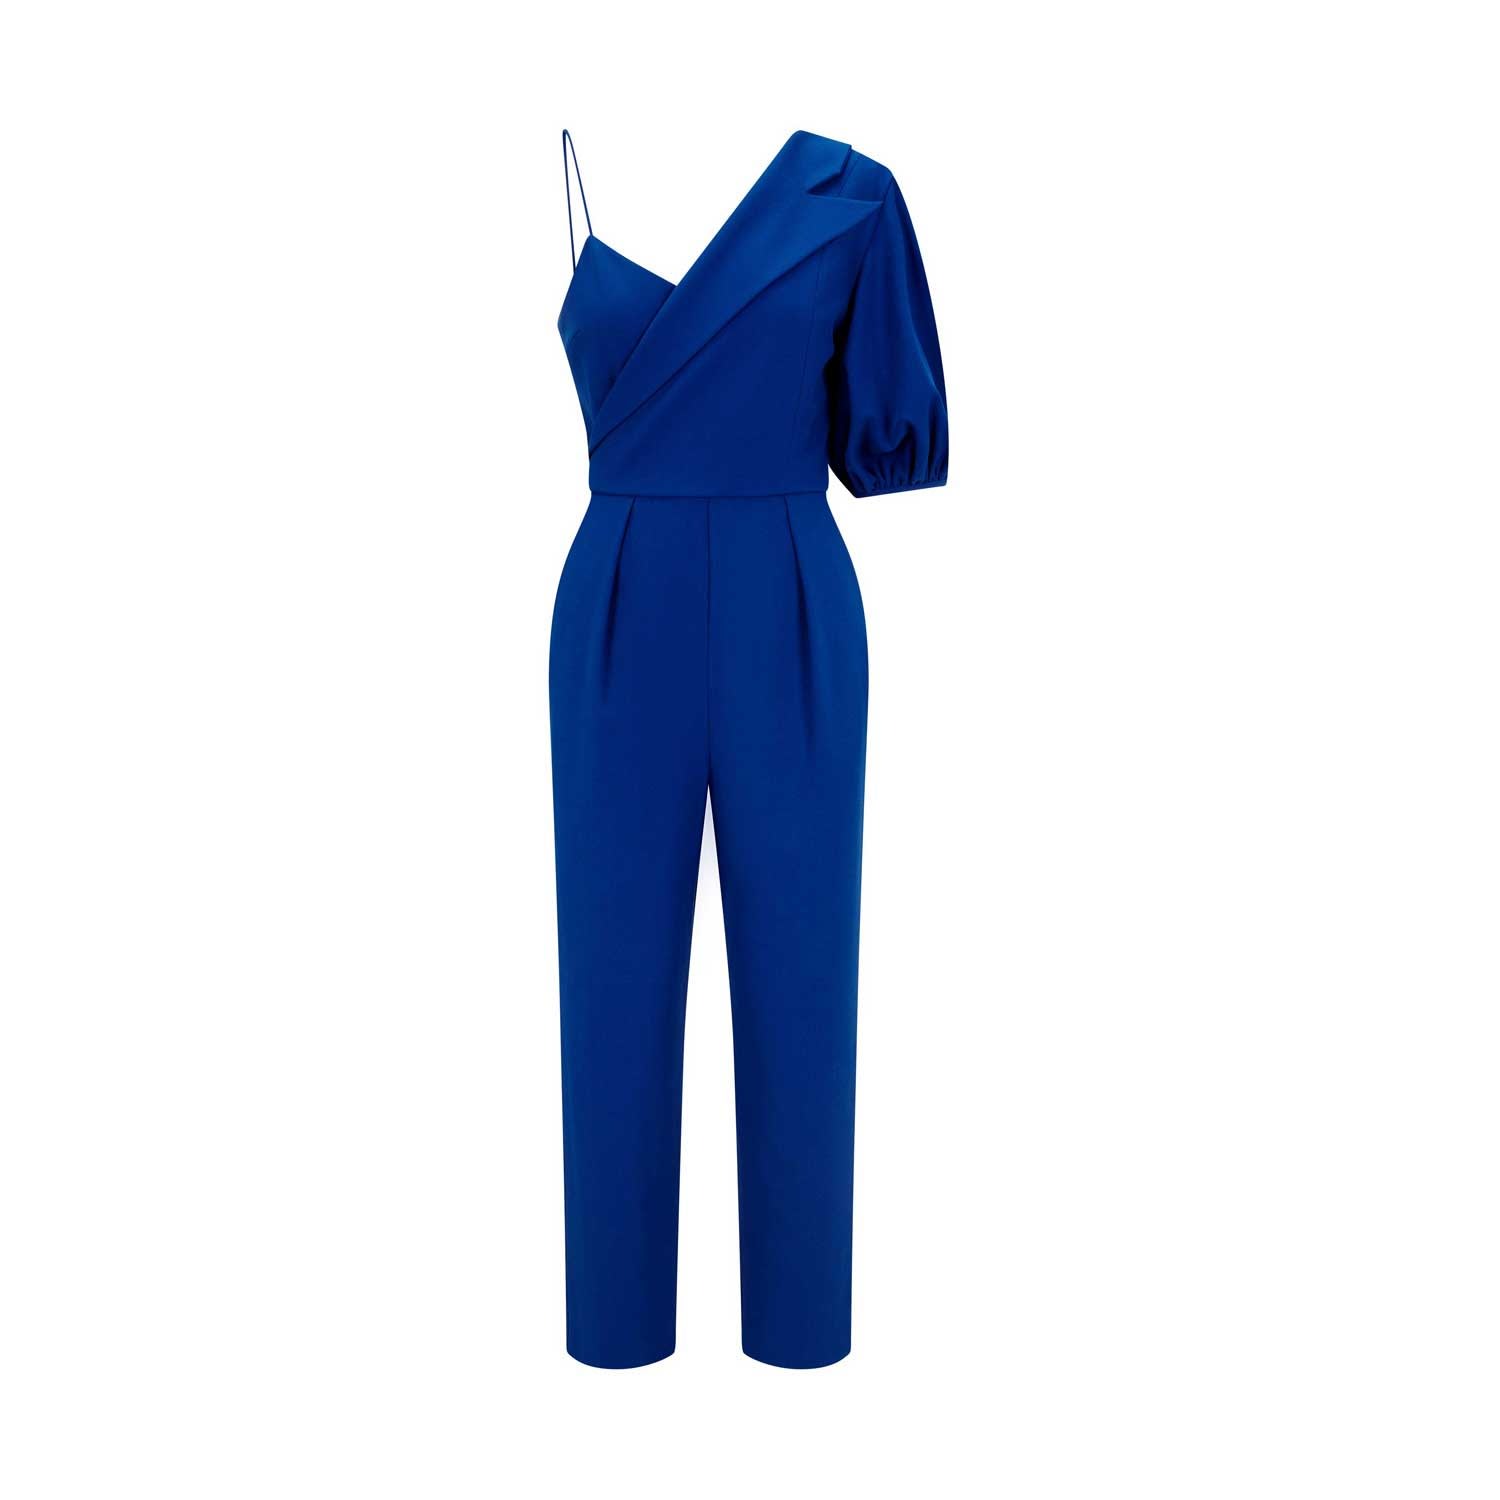 Shop Femponiq Women's Peak Lapel Puff Sleeve Crepe Jumpsuit - Royal Blue